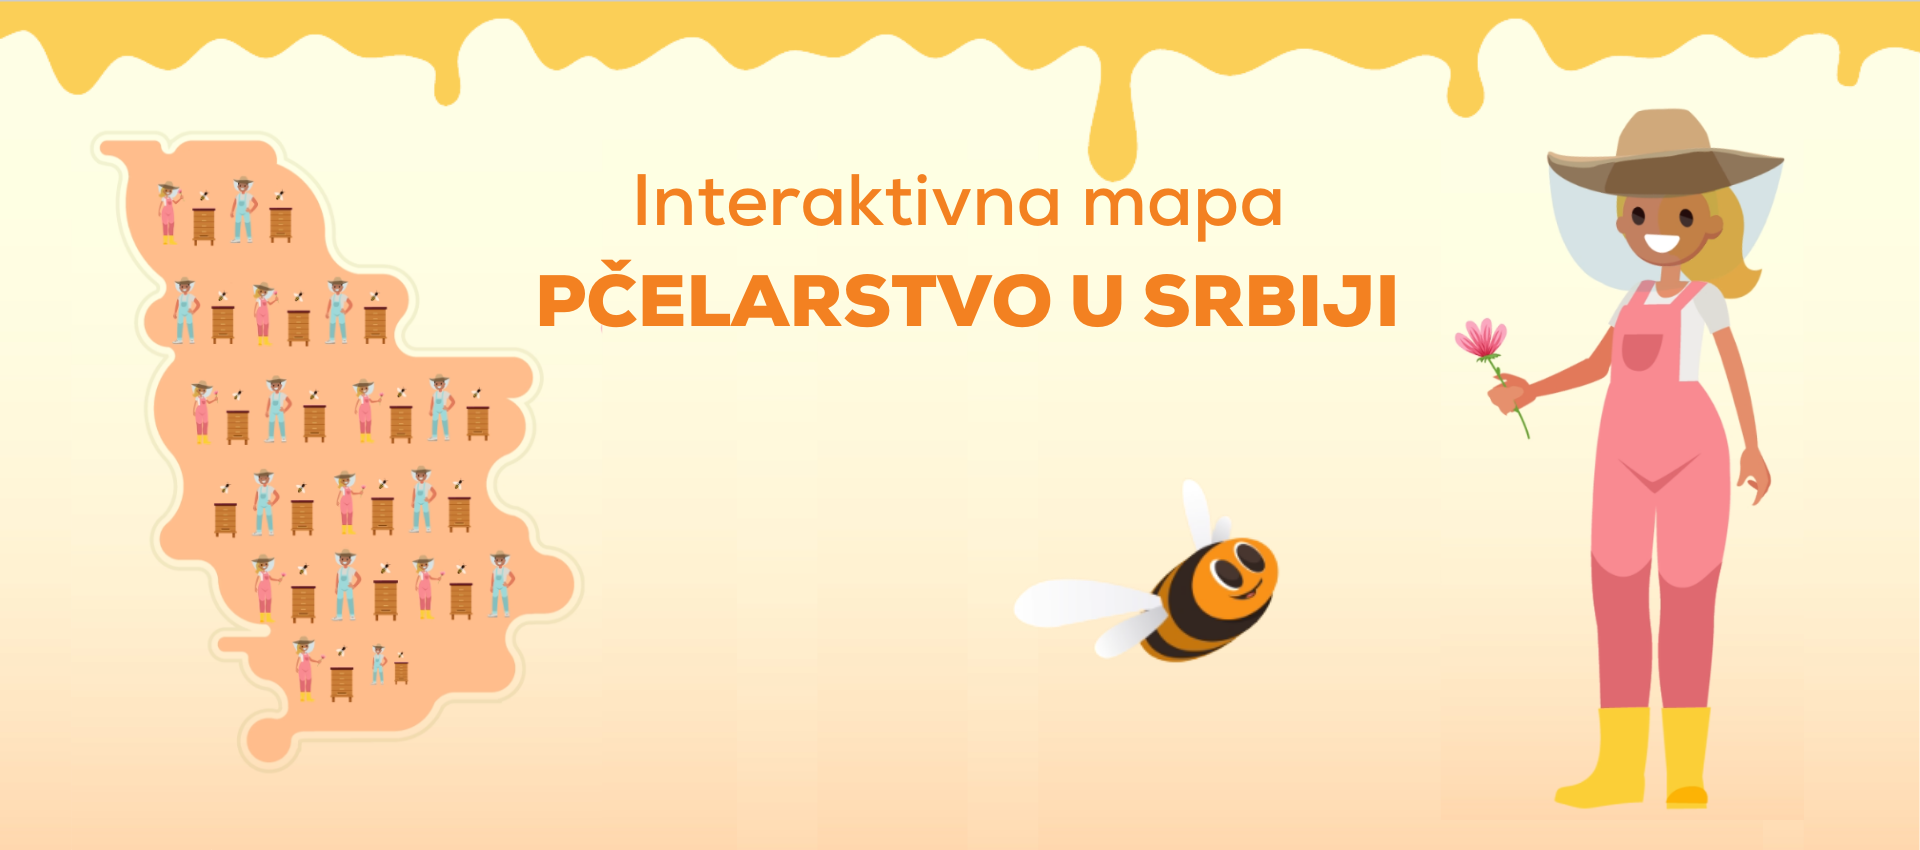 Interaktivna mapa o pčelarstvu u Srbiji